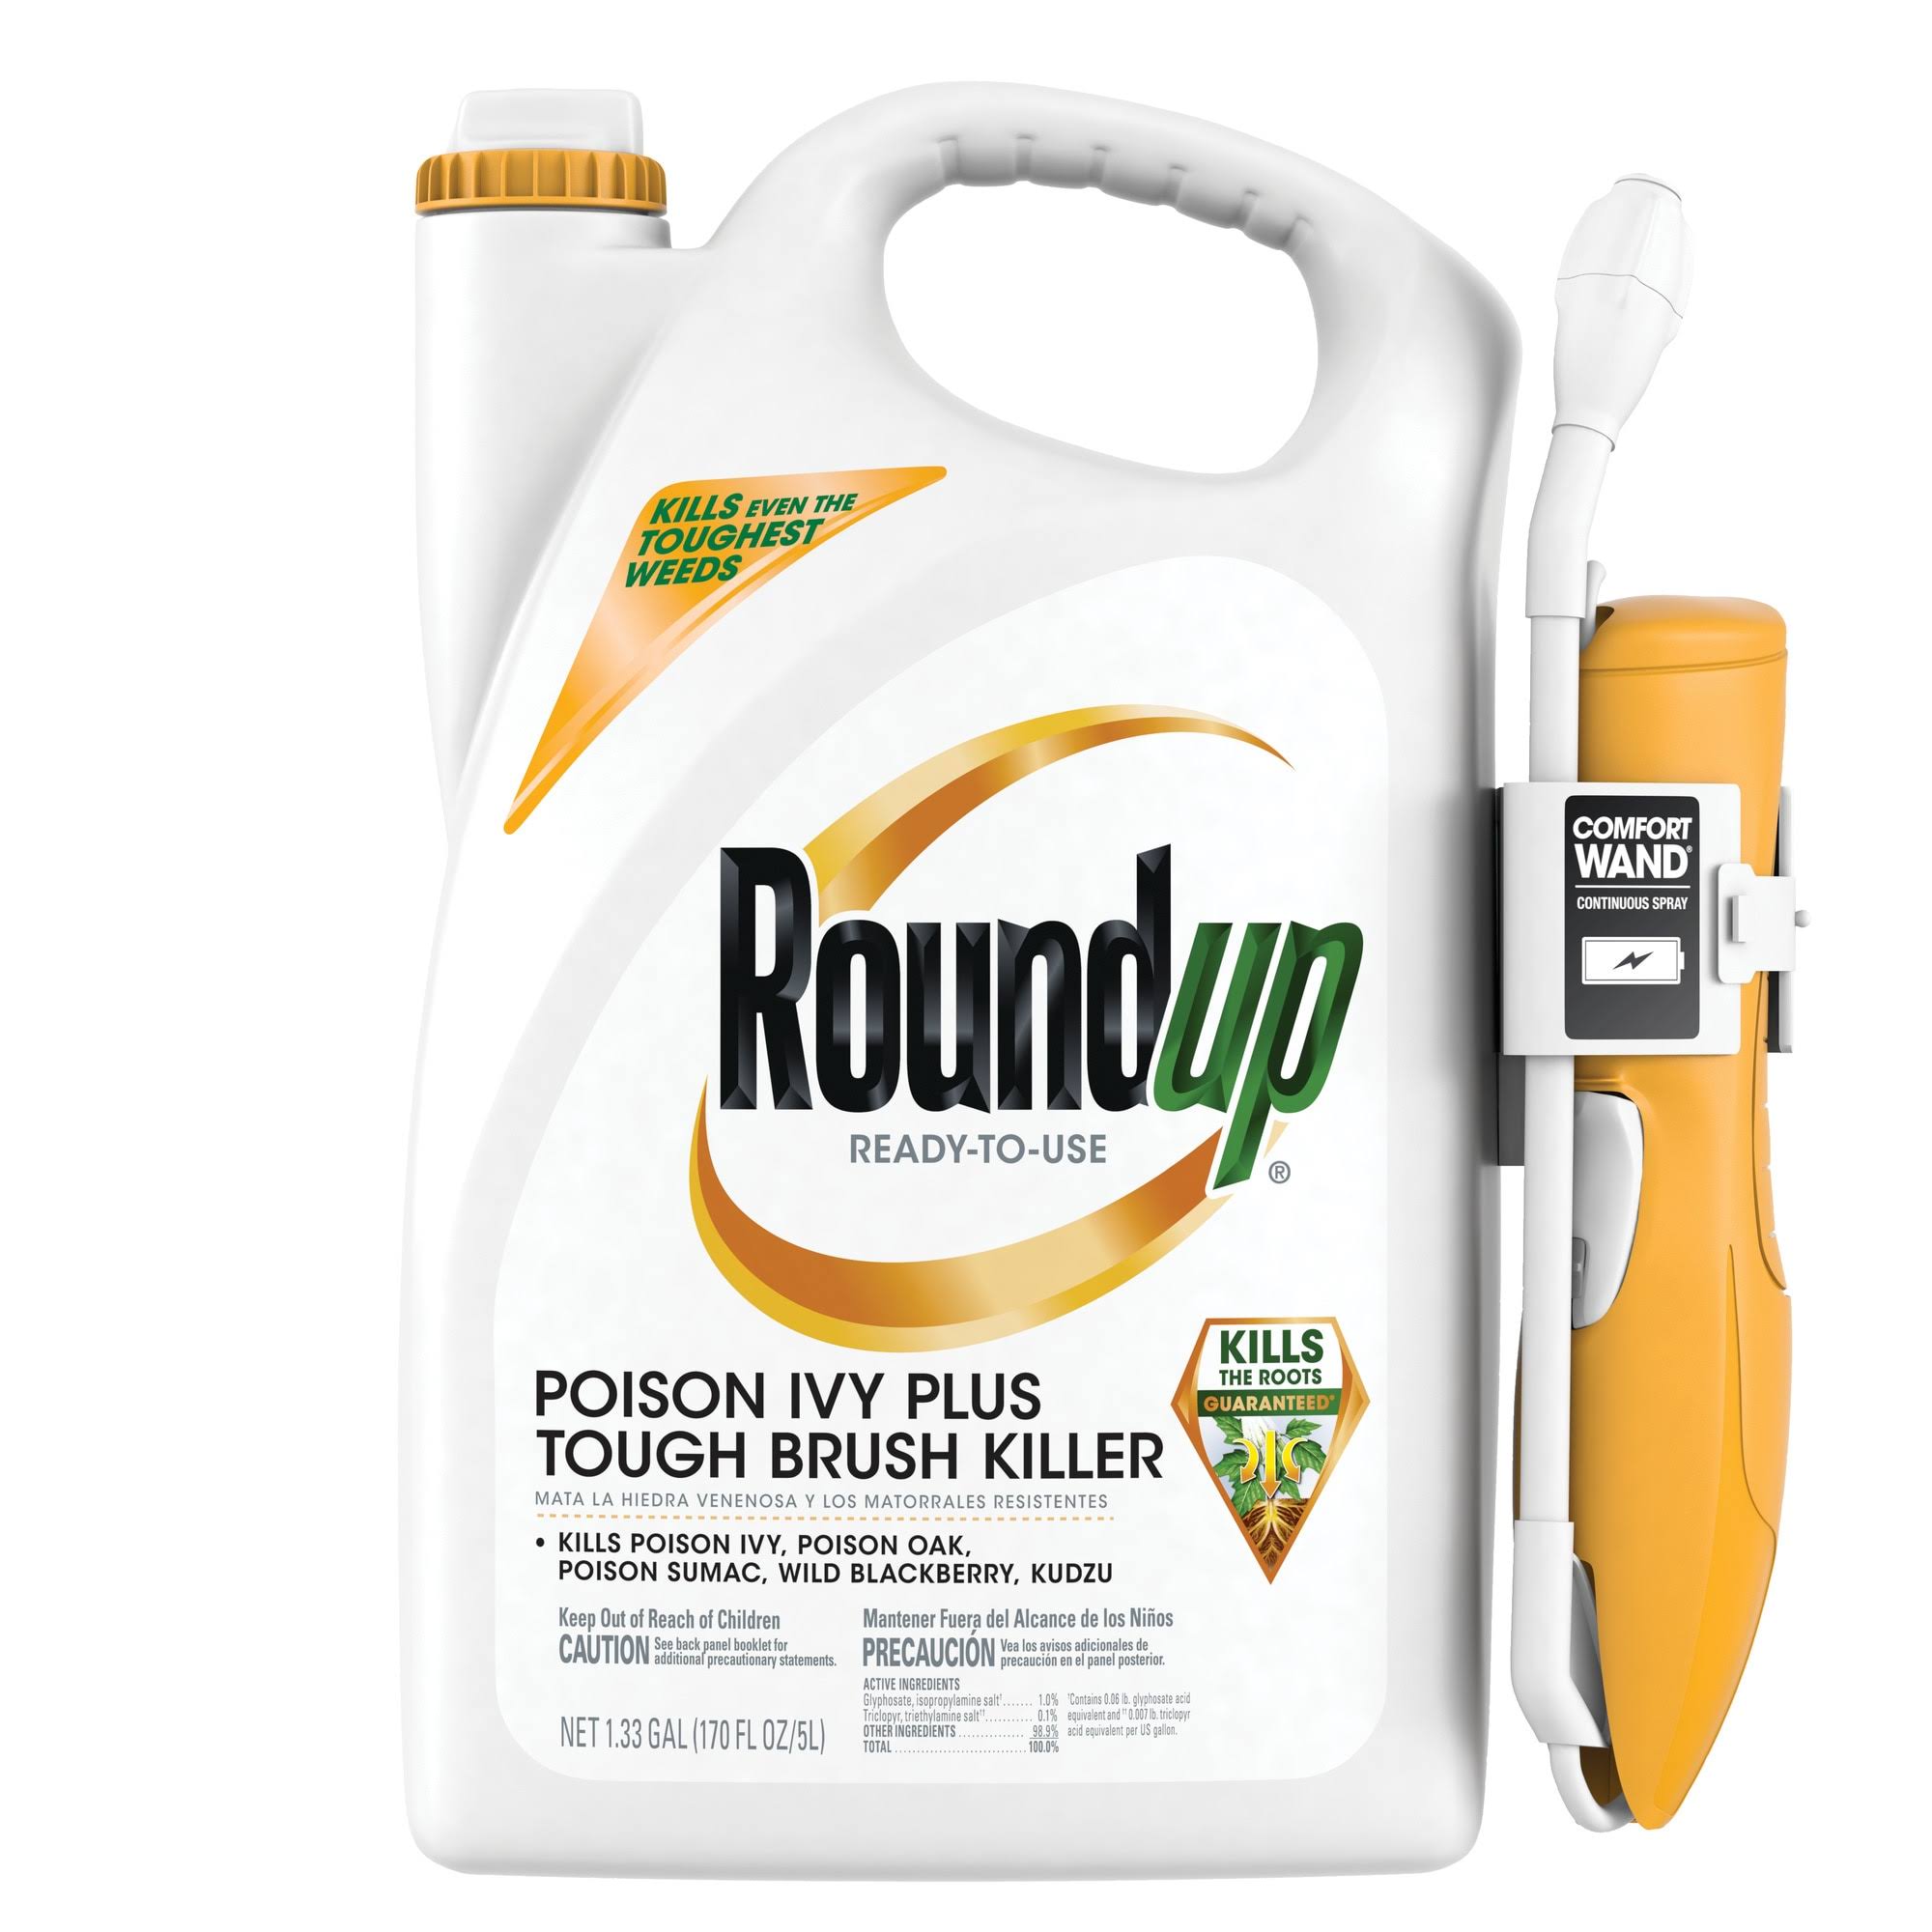 Roundup Ready-to-Use Poison Ivy Plus Tough Brush Killer - 1.33 Gallon